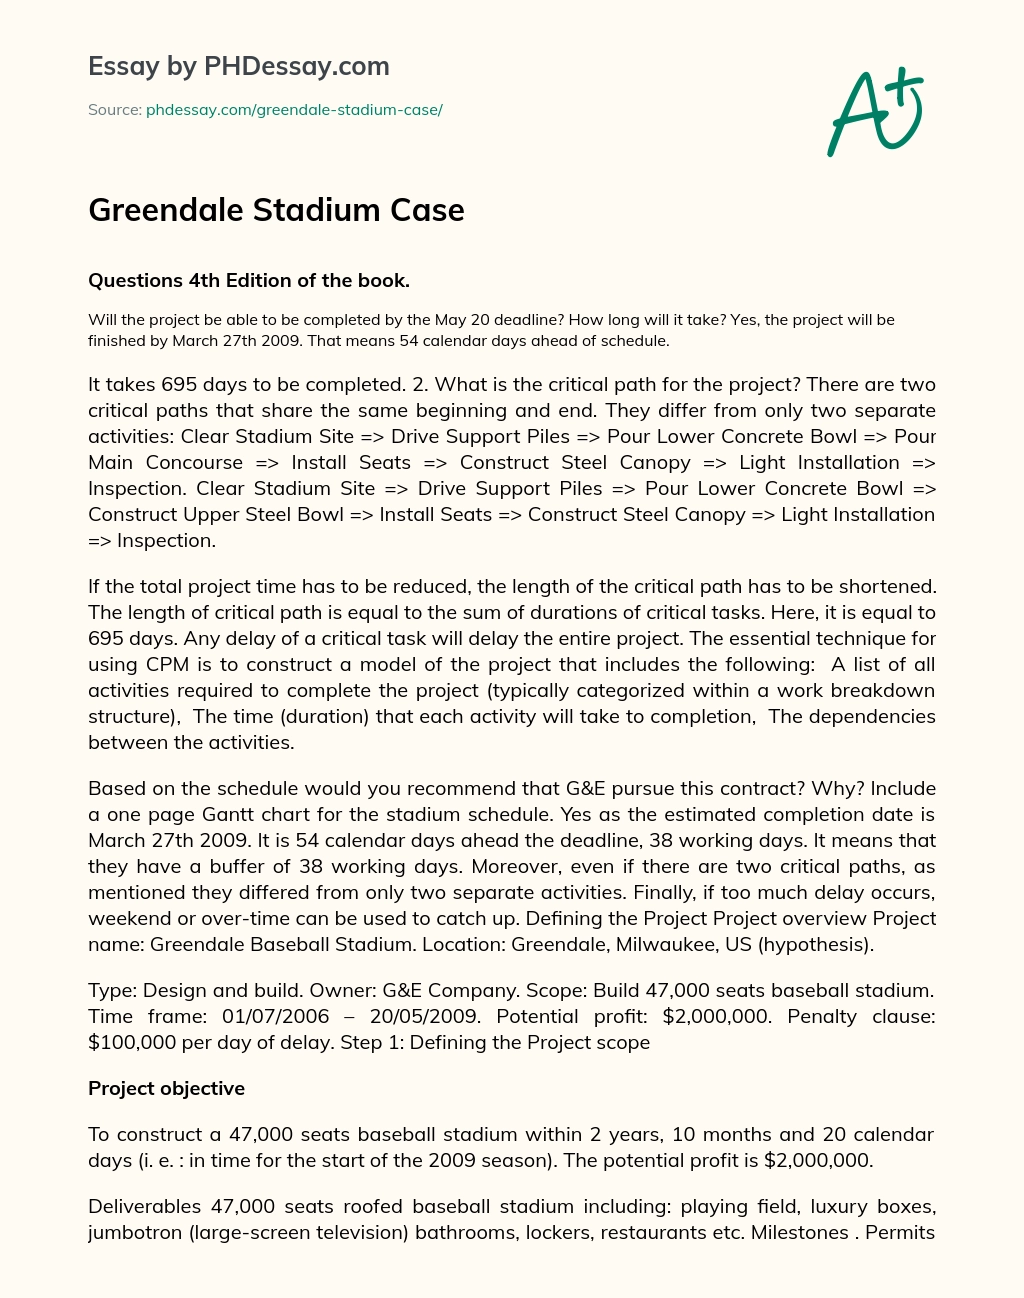 Greendale Stadium Case essay